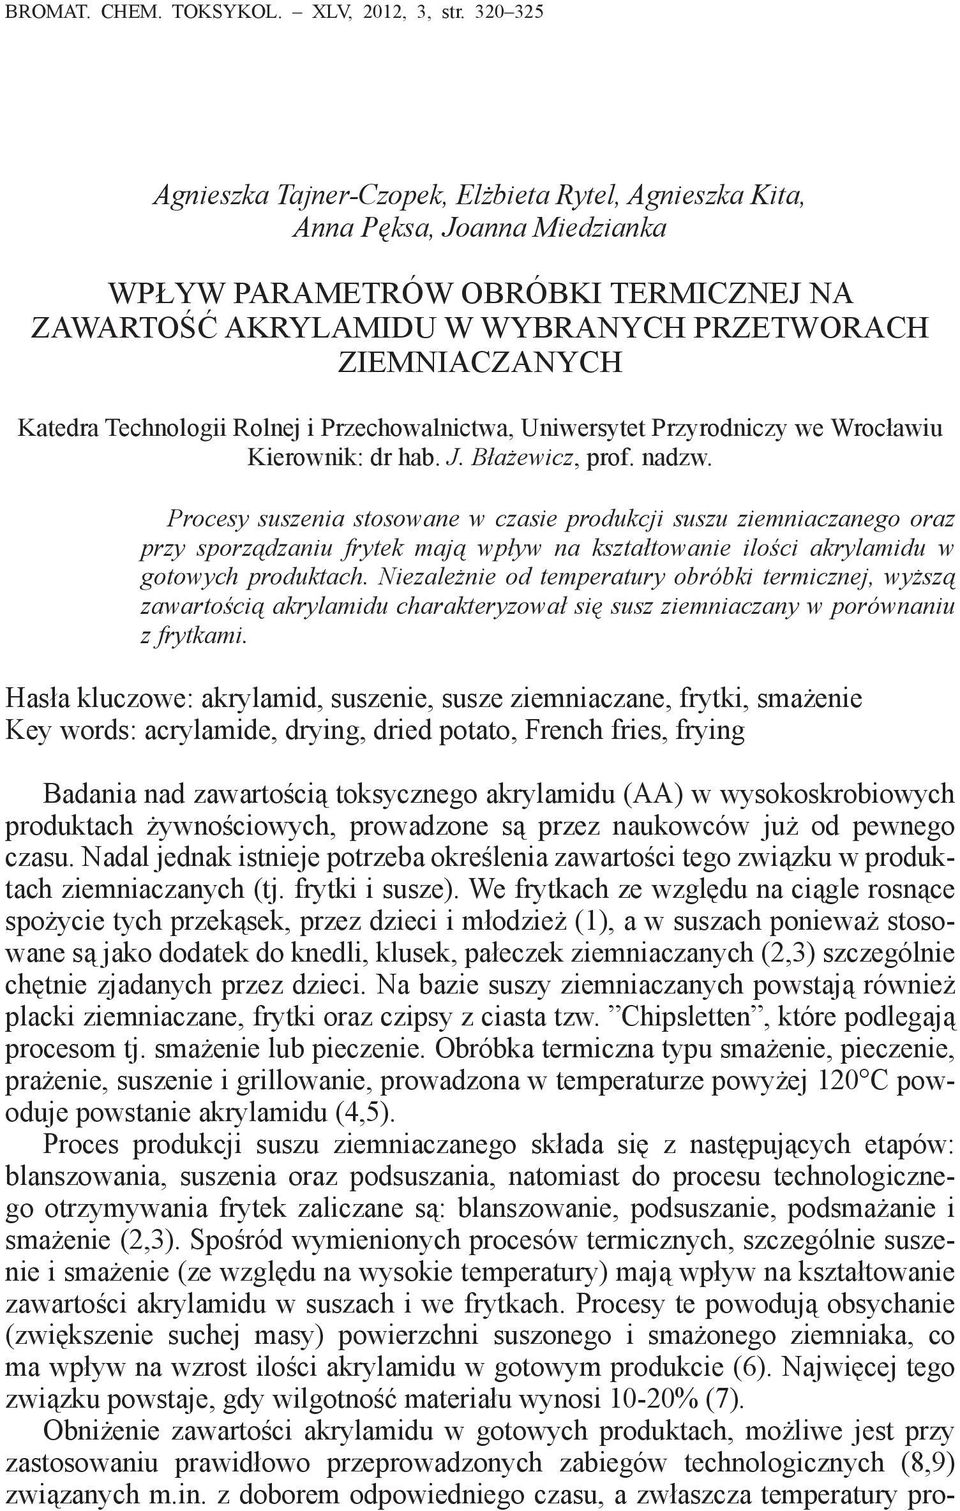 Katedra Technologii Rolnej i Przechowalnictwa, Uniwersytet Przyrodniczy we Wrocławiu Kierownik: dr hab. J. Błażewicz, prof. nadzw.